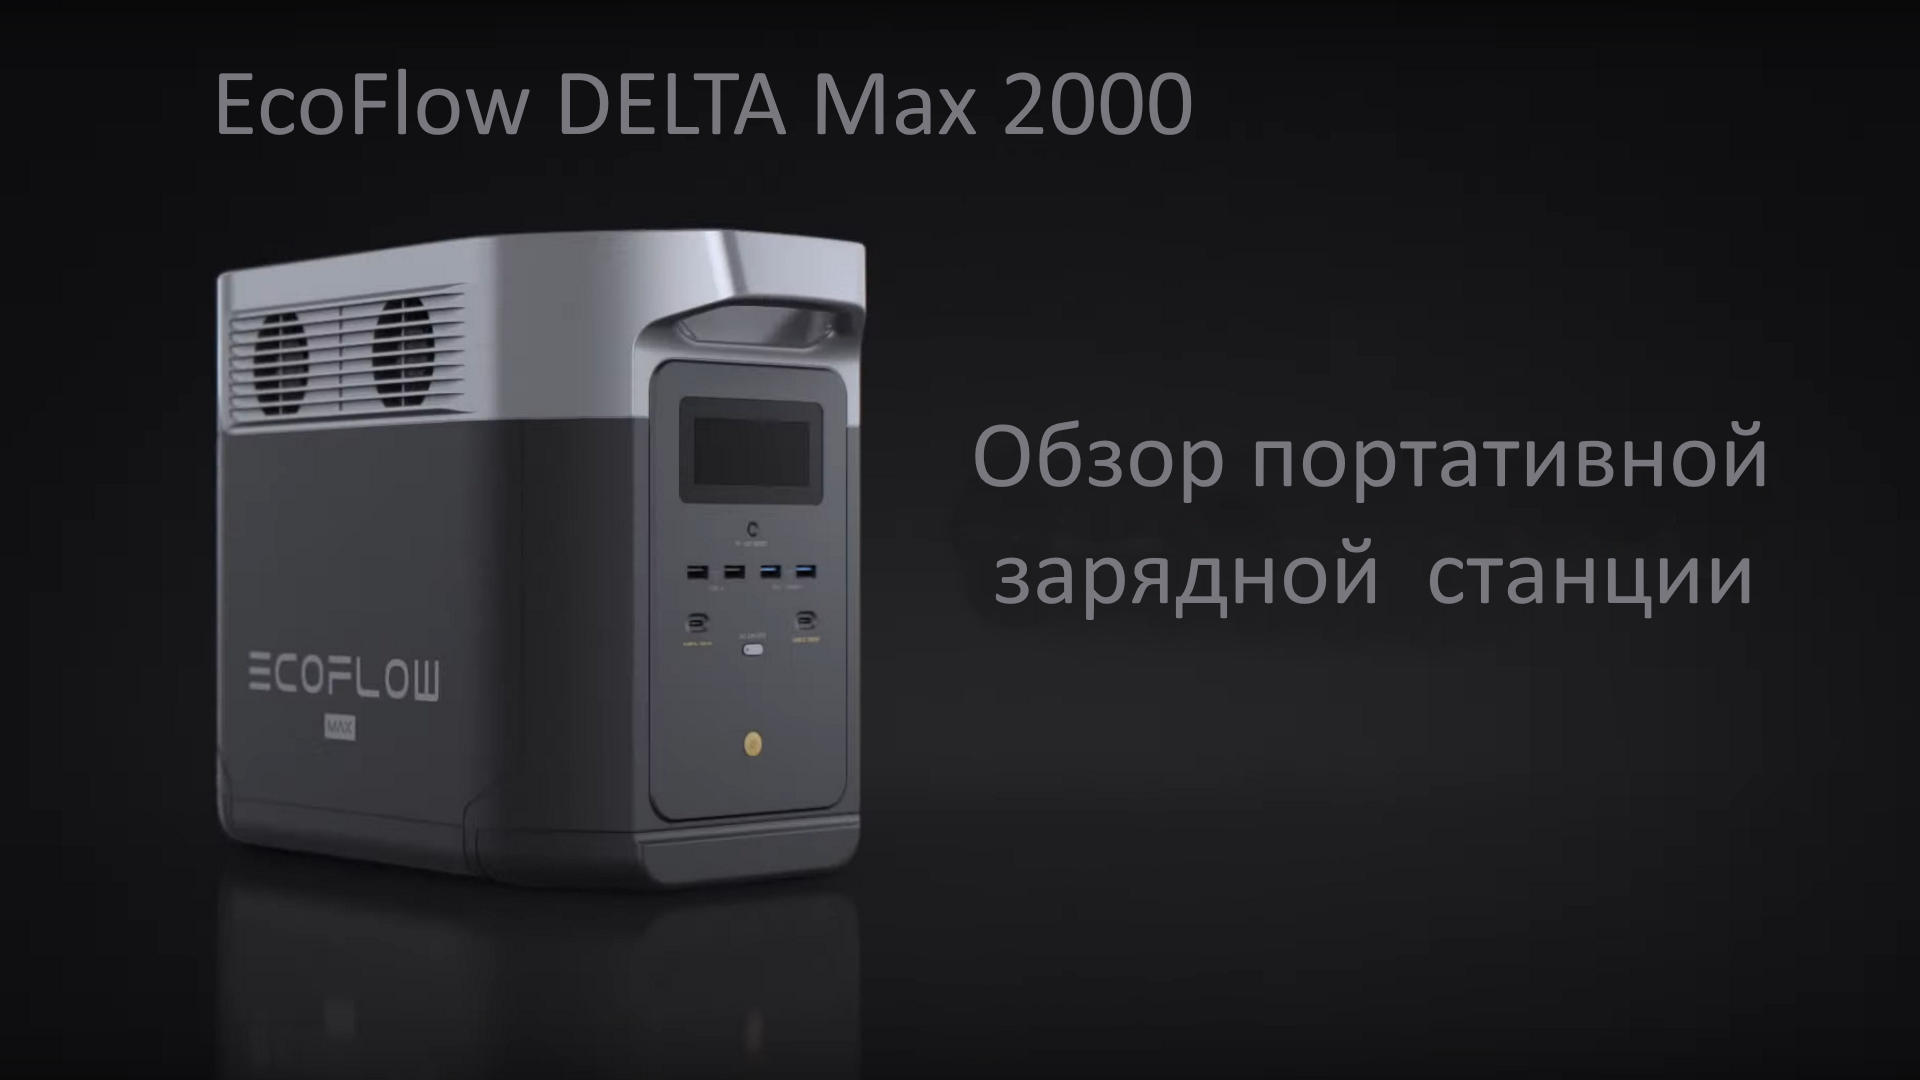 Ecoflow зарядная станция. Зарядная станция Ecoflow. Портативная зарядная станция Ecoflow Delta. Ecoflow Delta Max 2000w. Зарядная станция Ecoflow Delta Max.